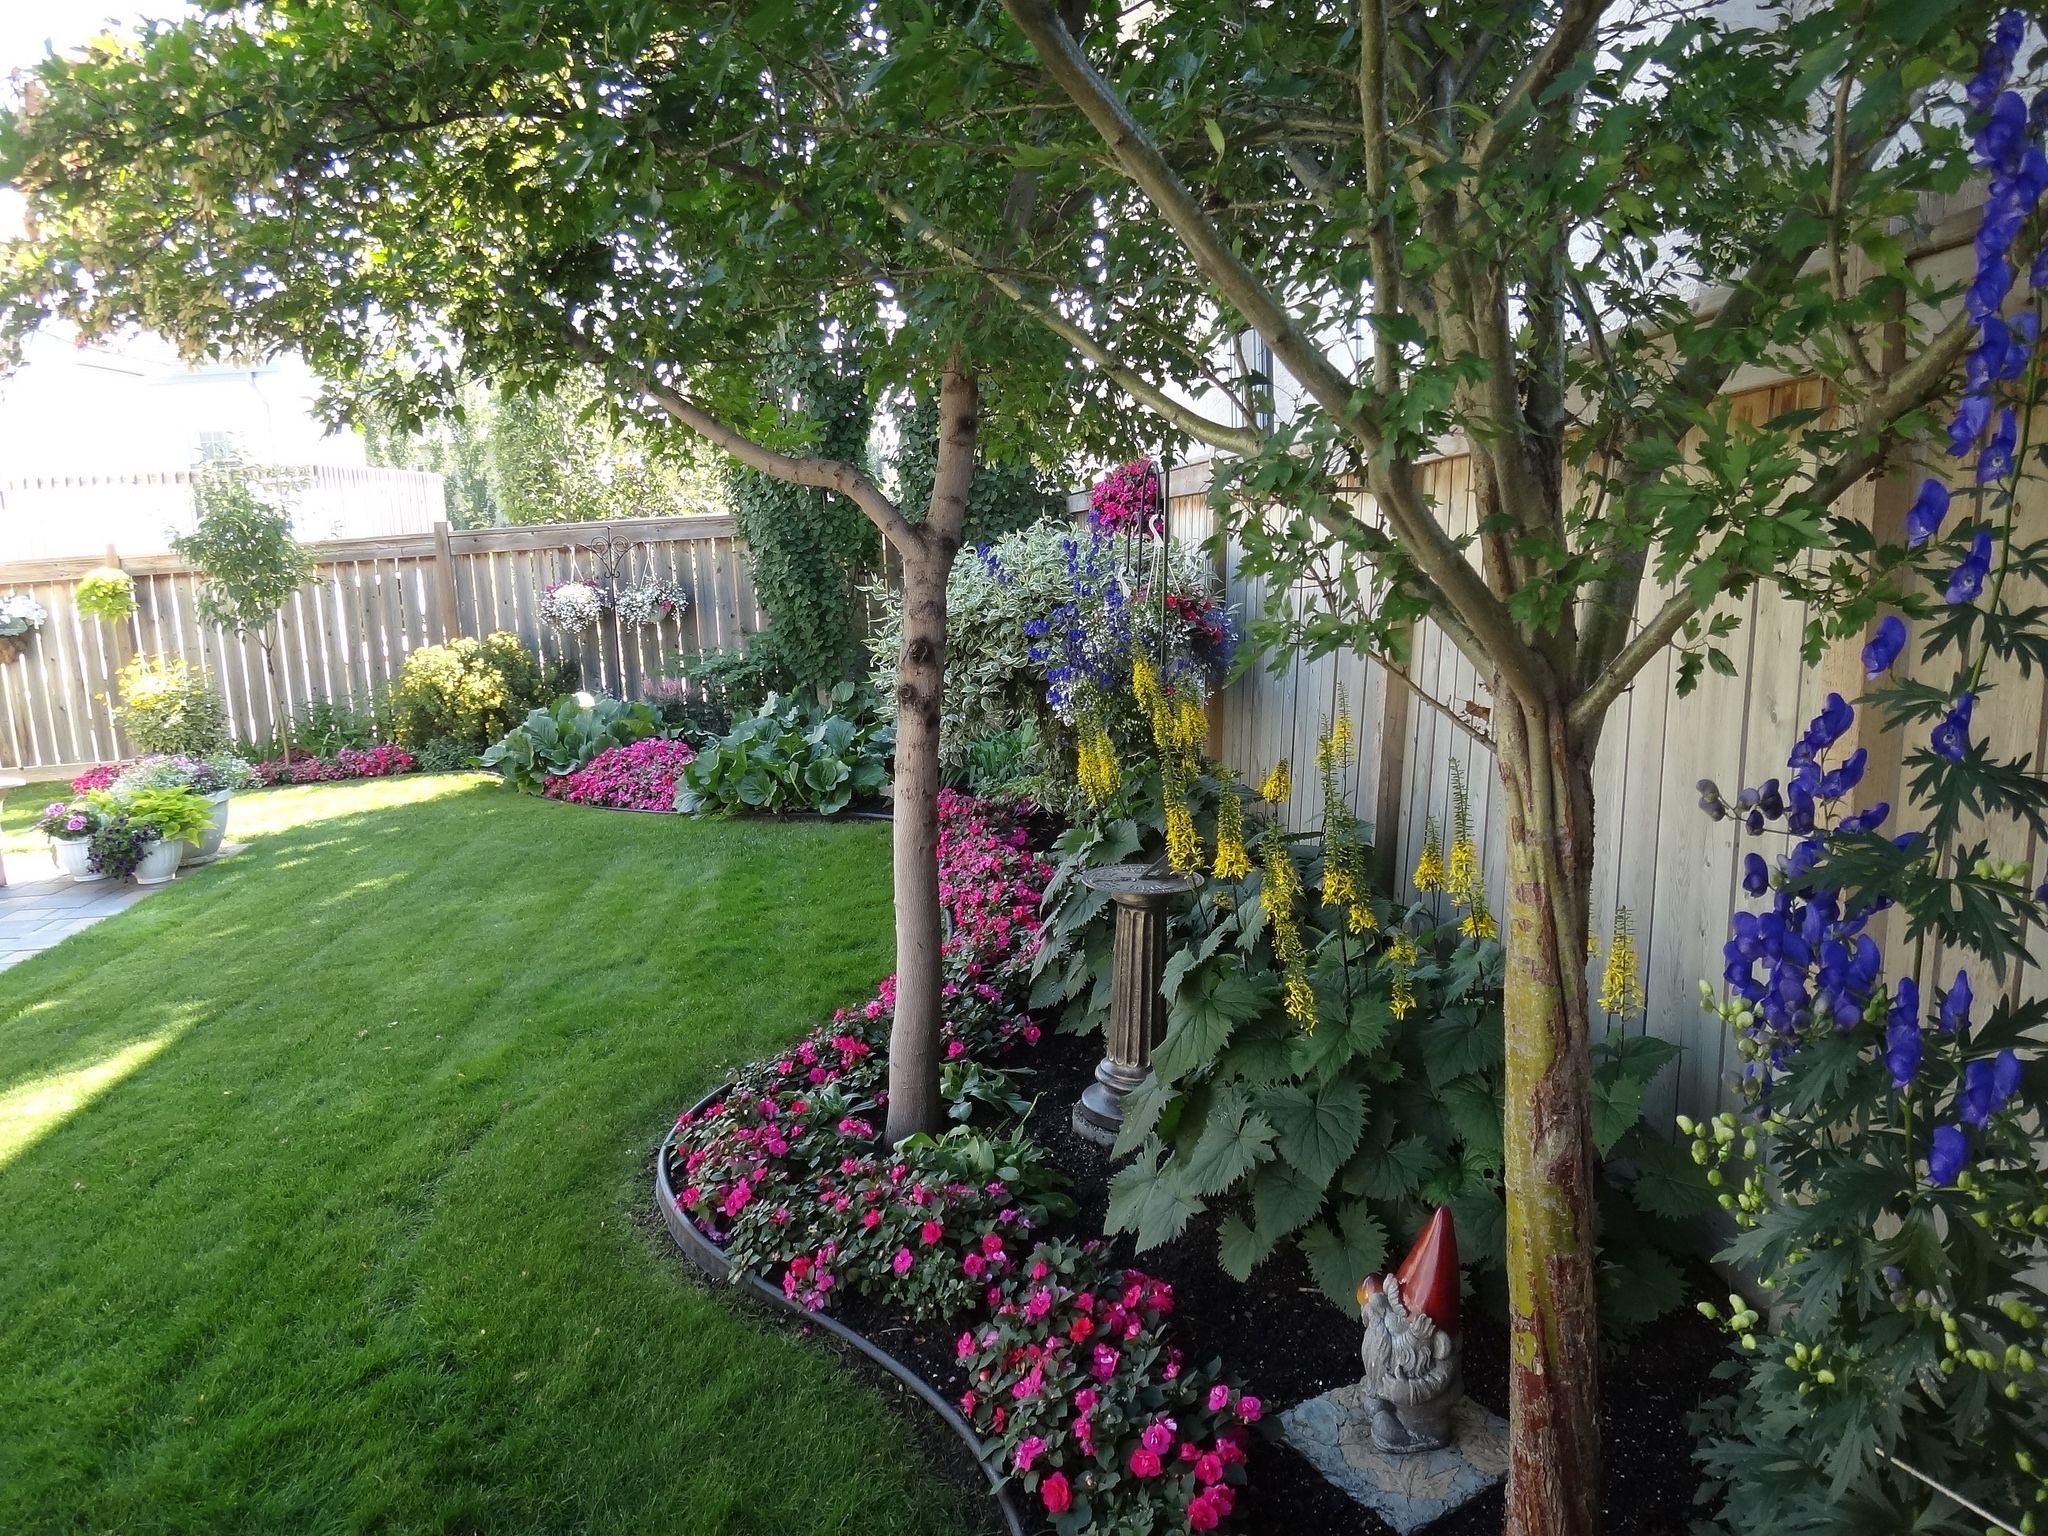 Что посадить под деревьями: цветы, растения или овощи? в огороде или саду в тени (40+ фото & видео)+отзывы